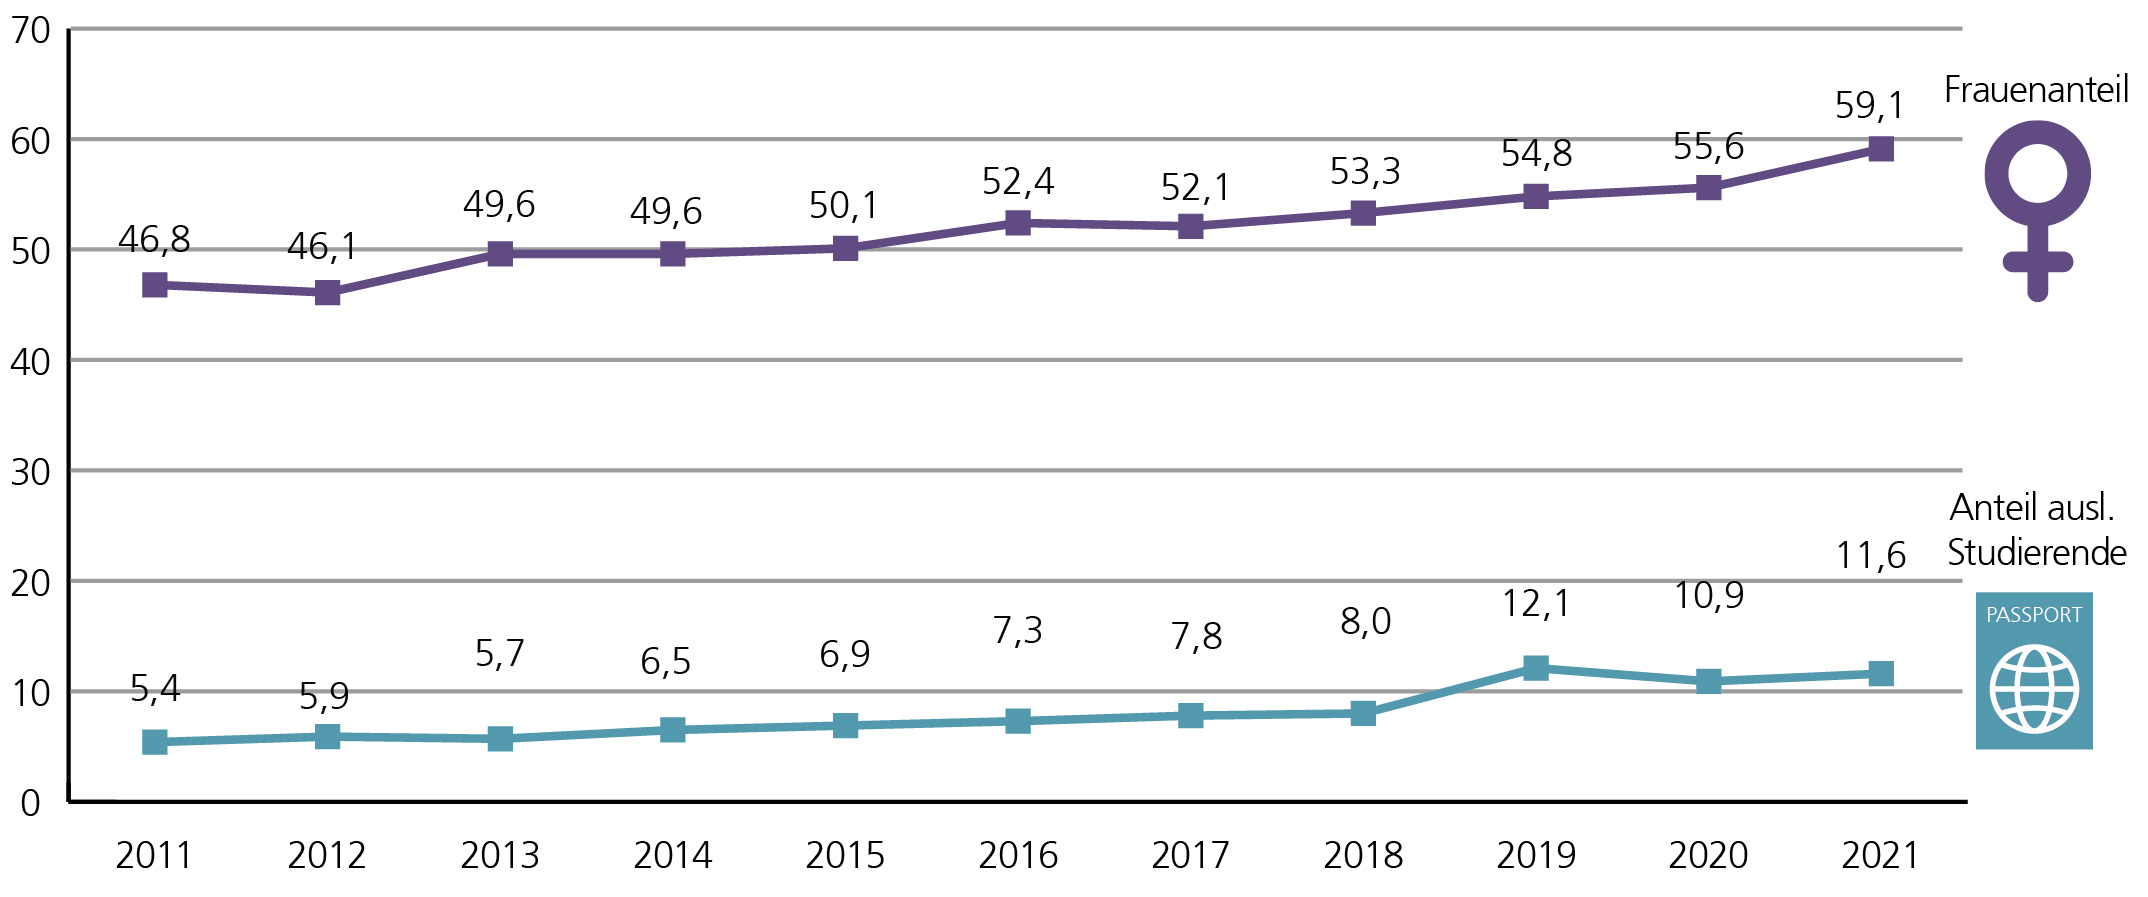 A3: Der Frauenanteil unter den Deutschlandstipendiatinnen und -stipendiaten hat sich zwischen 2011 und 2021 von 46,8 % auf 59,1 % erhöht. Im selben Zeitraum ist zudem auch der Anteil ausländischer Studierender, die mit einem Deutschlandstipendium gefördert wurden, angestiegen. Lag dieser 2011 noch bei 5,4%, hat er sich bis 2021 auf 11,6 % erhöht. 